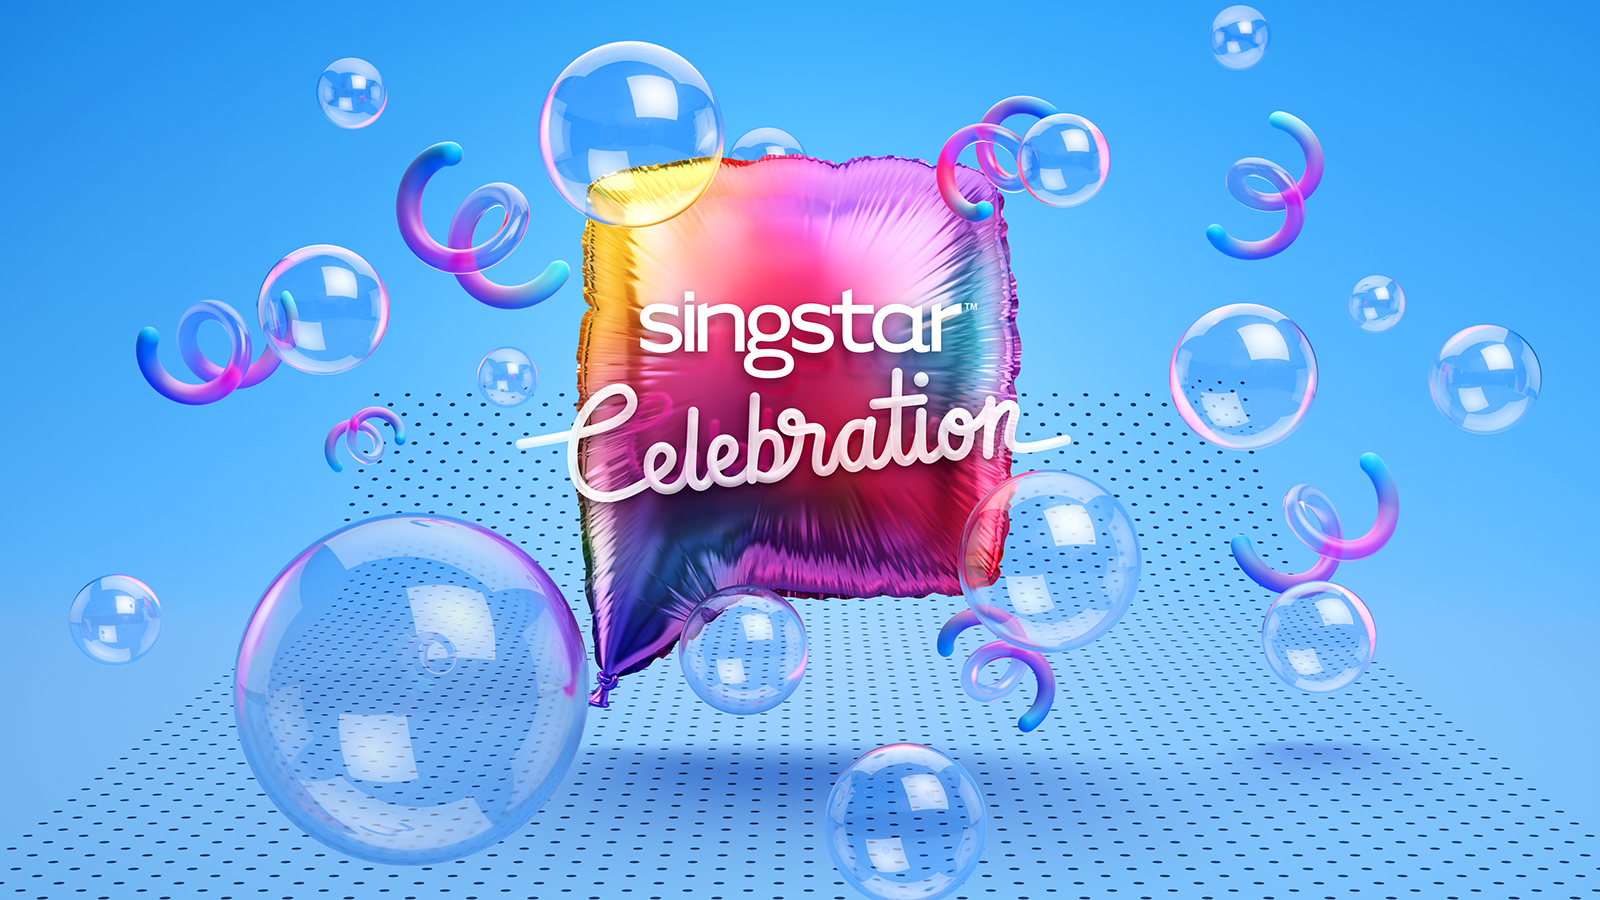 SingStar Review | GodisaGeek.com